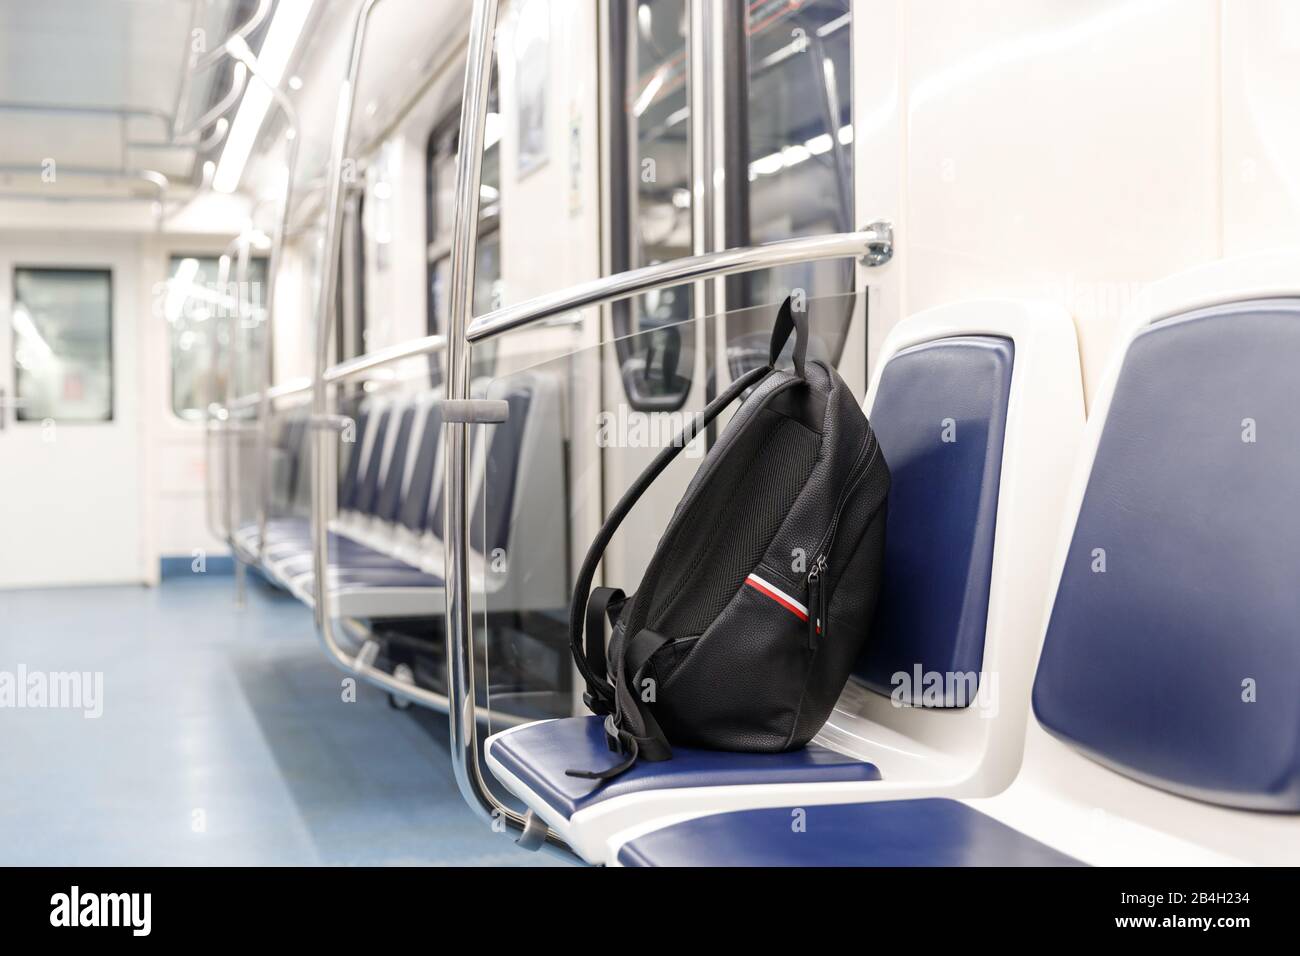 Zaino/borsa nera in pelle dimenticata o bomba per commettere un attacco terroristico si trova su un sedile in treno metropolitana, trasporto pubblico. Minaccia del terrorismo. Foto Stock